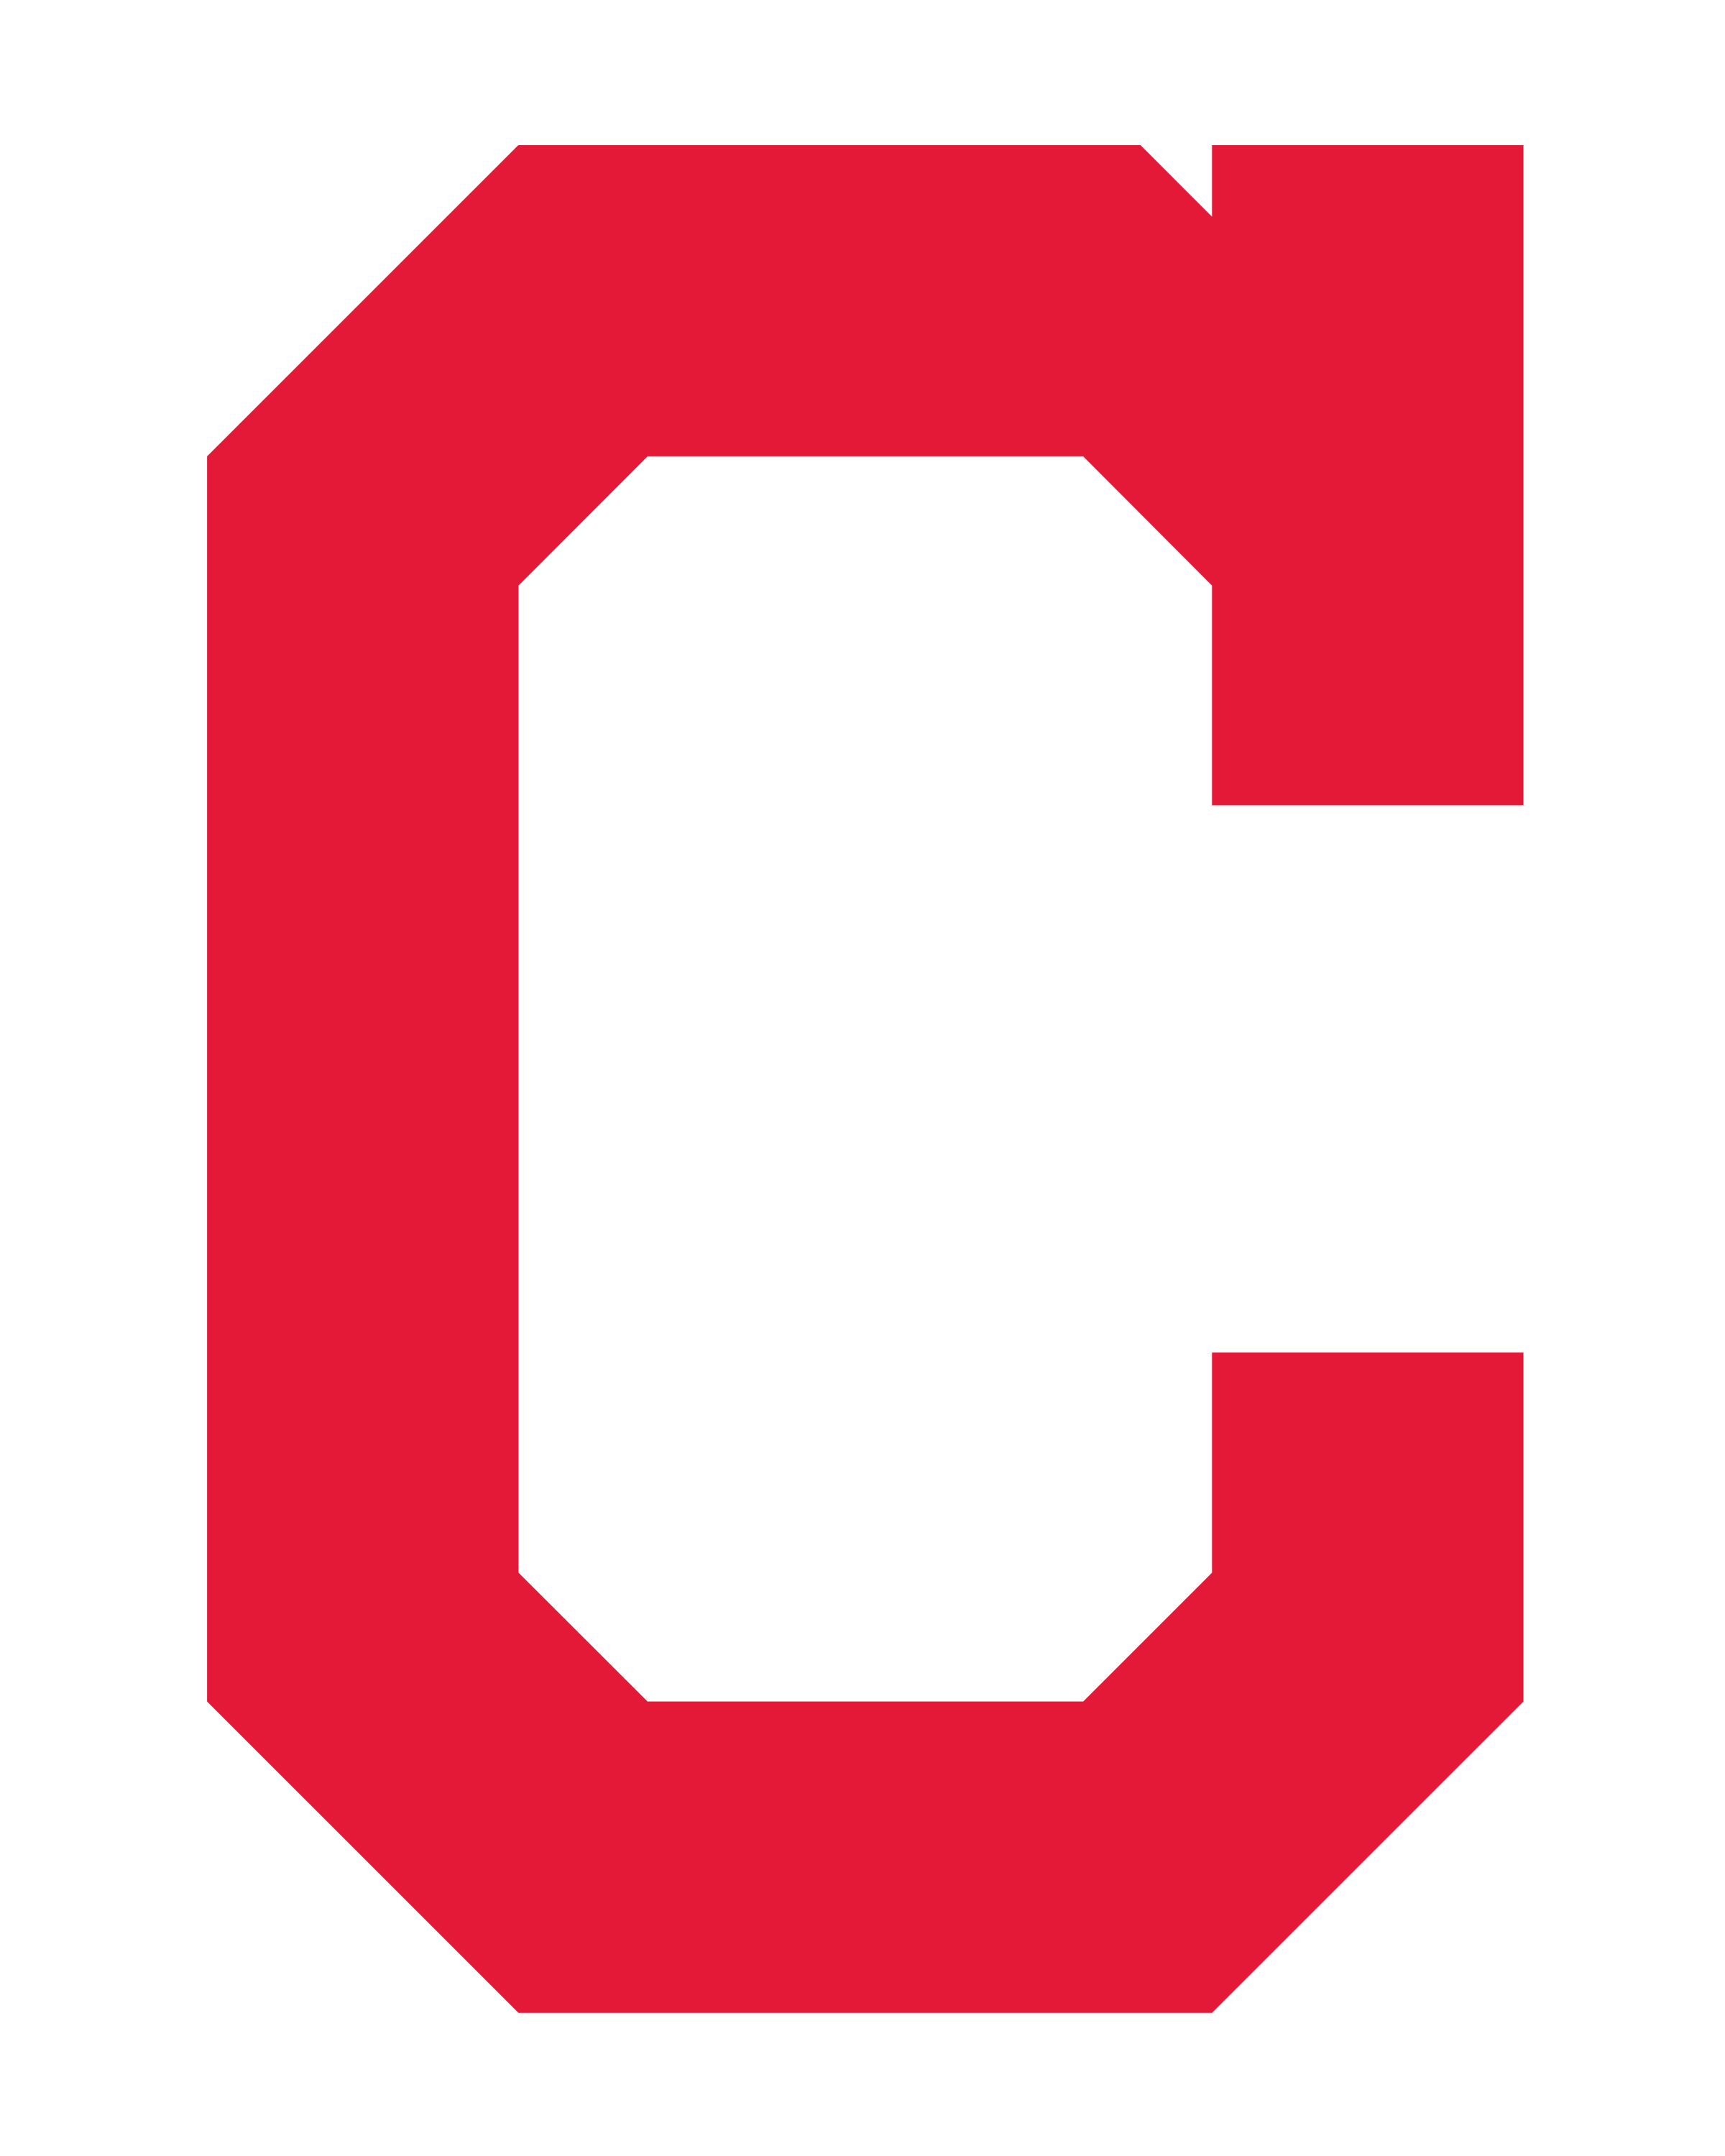 Large Red C Logo - Cleveland Indians Logo PNG Transparent & SVG Vector - Freebie Supply